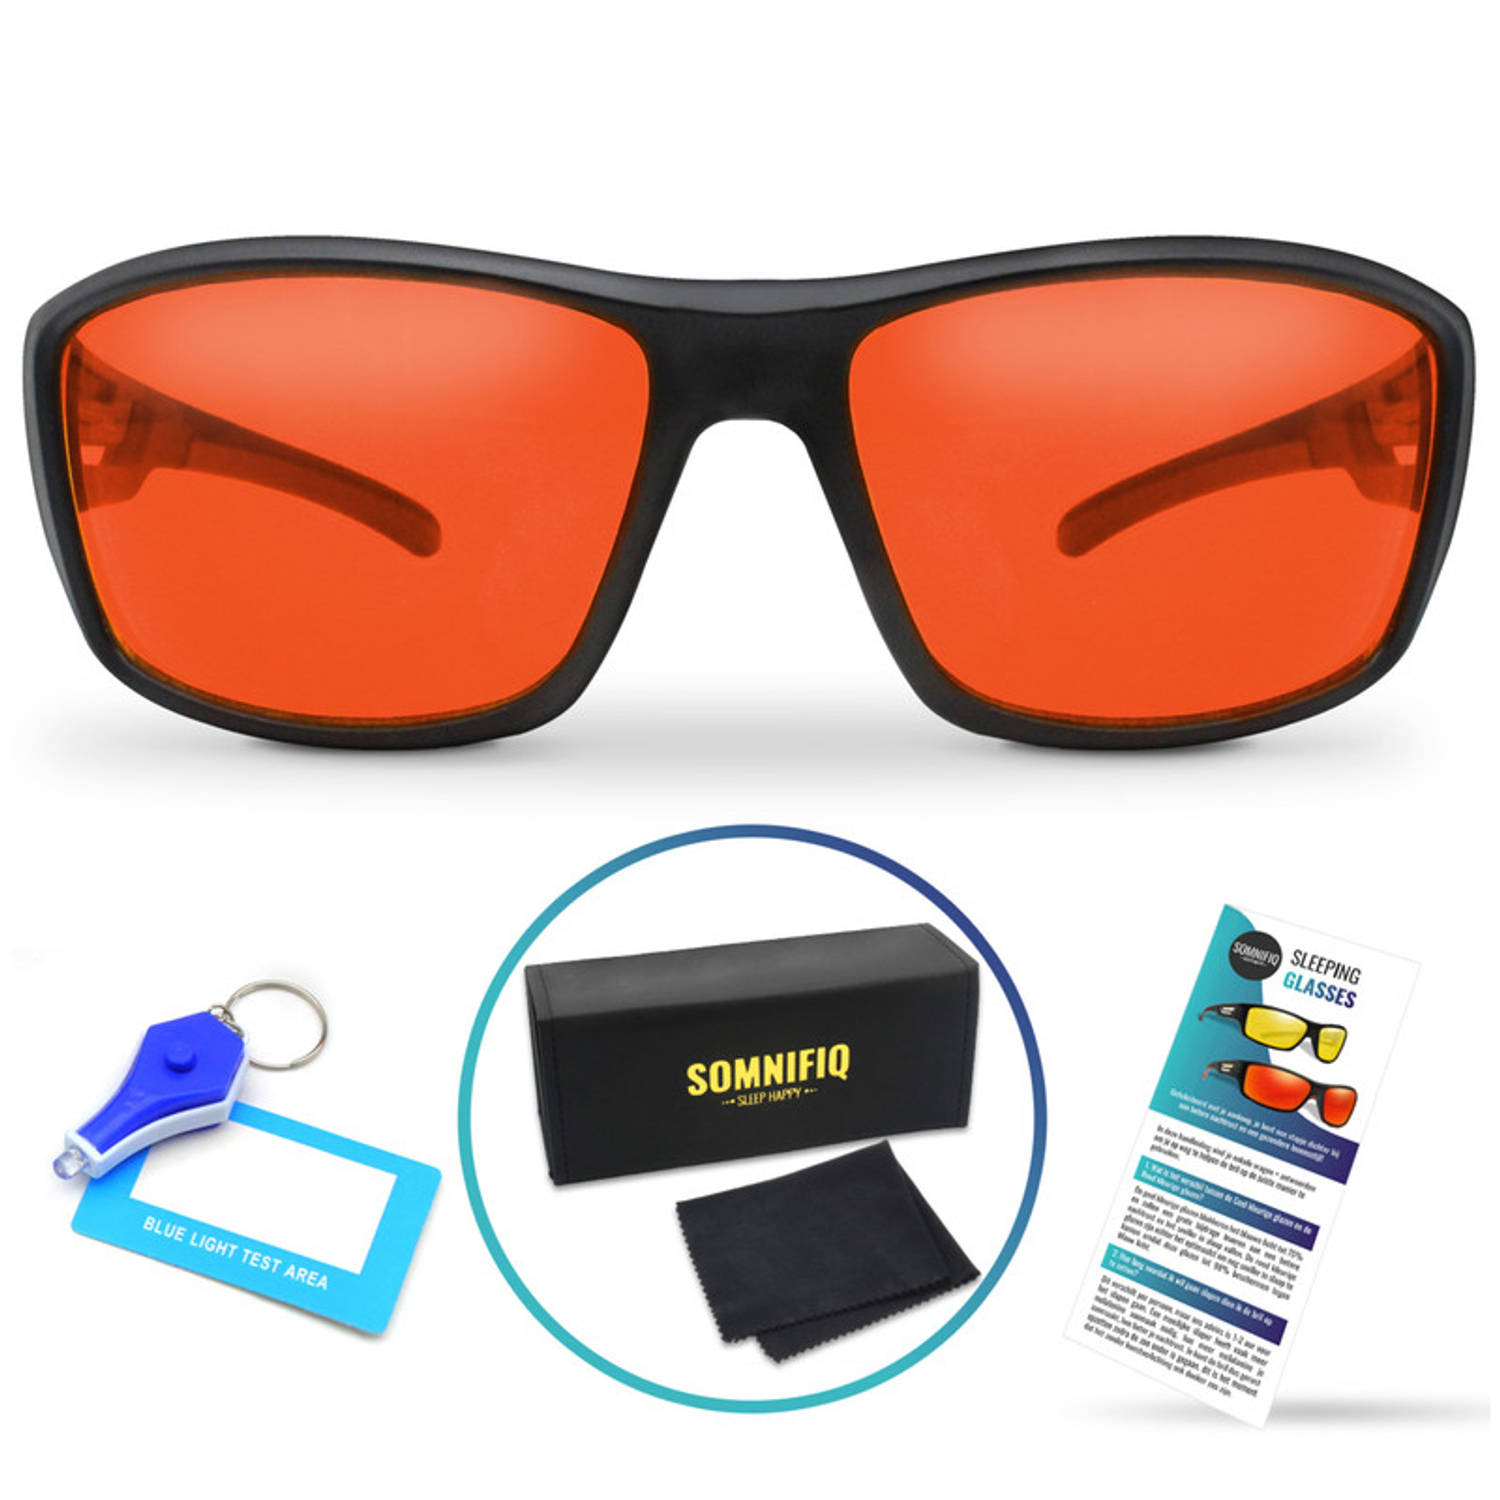 Somnifiq Slaapbril – Blauw Licht Bril – Beeldschermbril - Beter Slapen - Computerbril - Rood Kleurige Lenzen – Voor ‘s Avonds – Wraparound Fitting - Licht Gewicht - Blokkeert Blauw